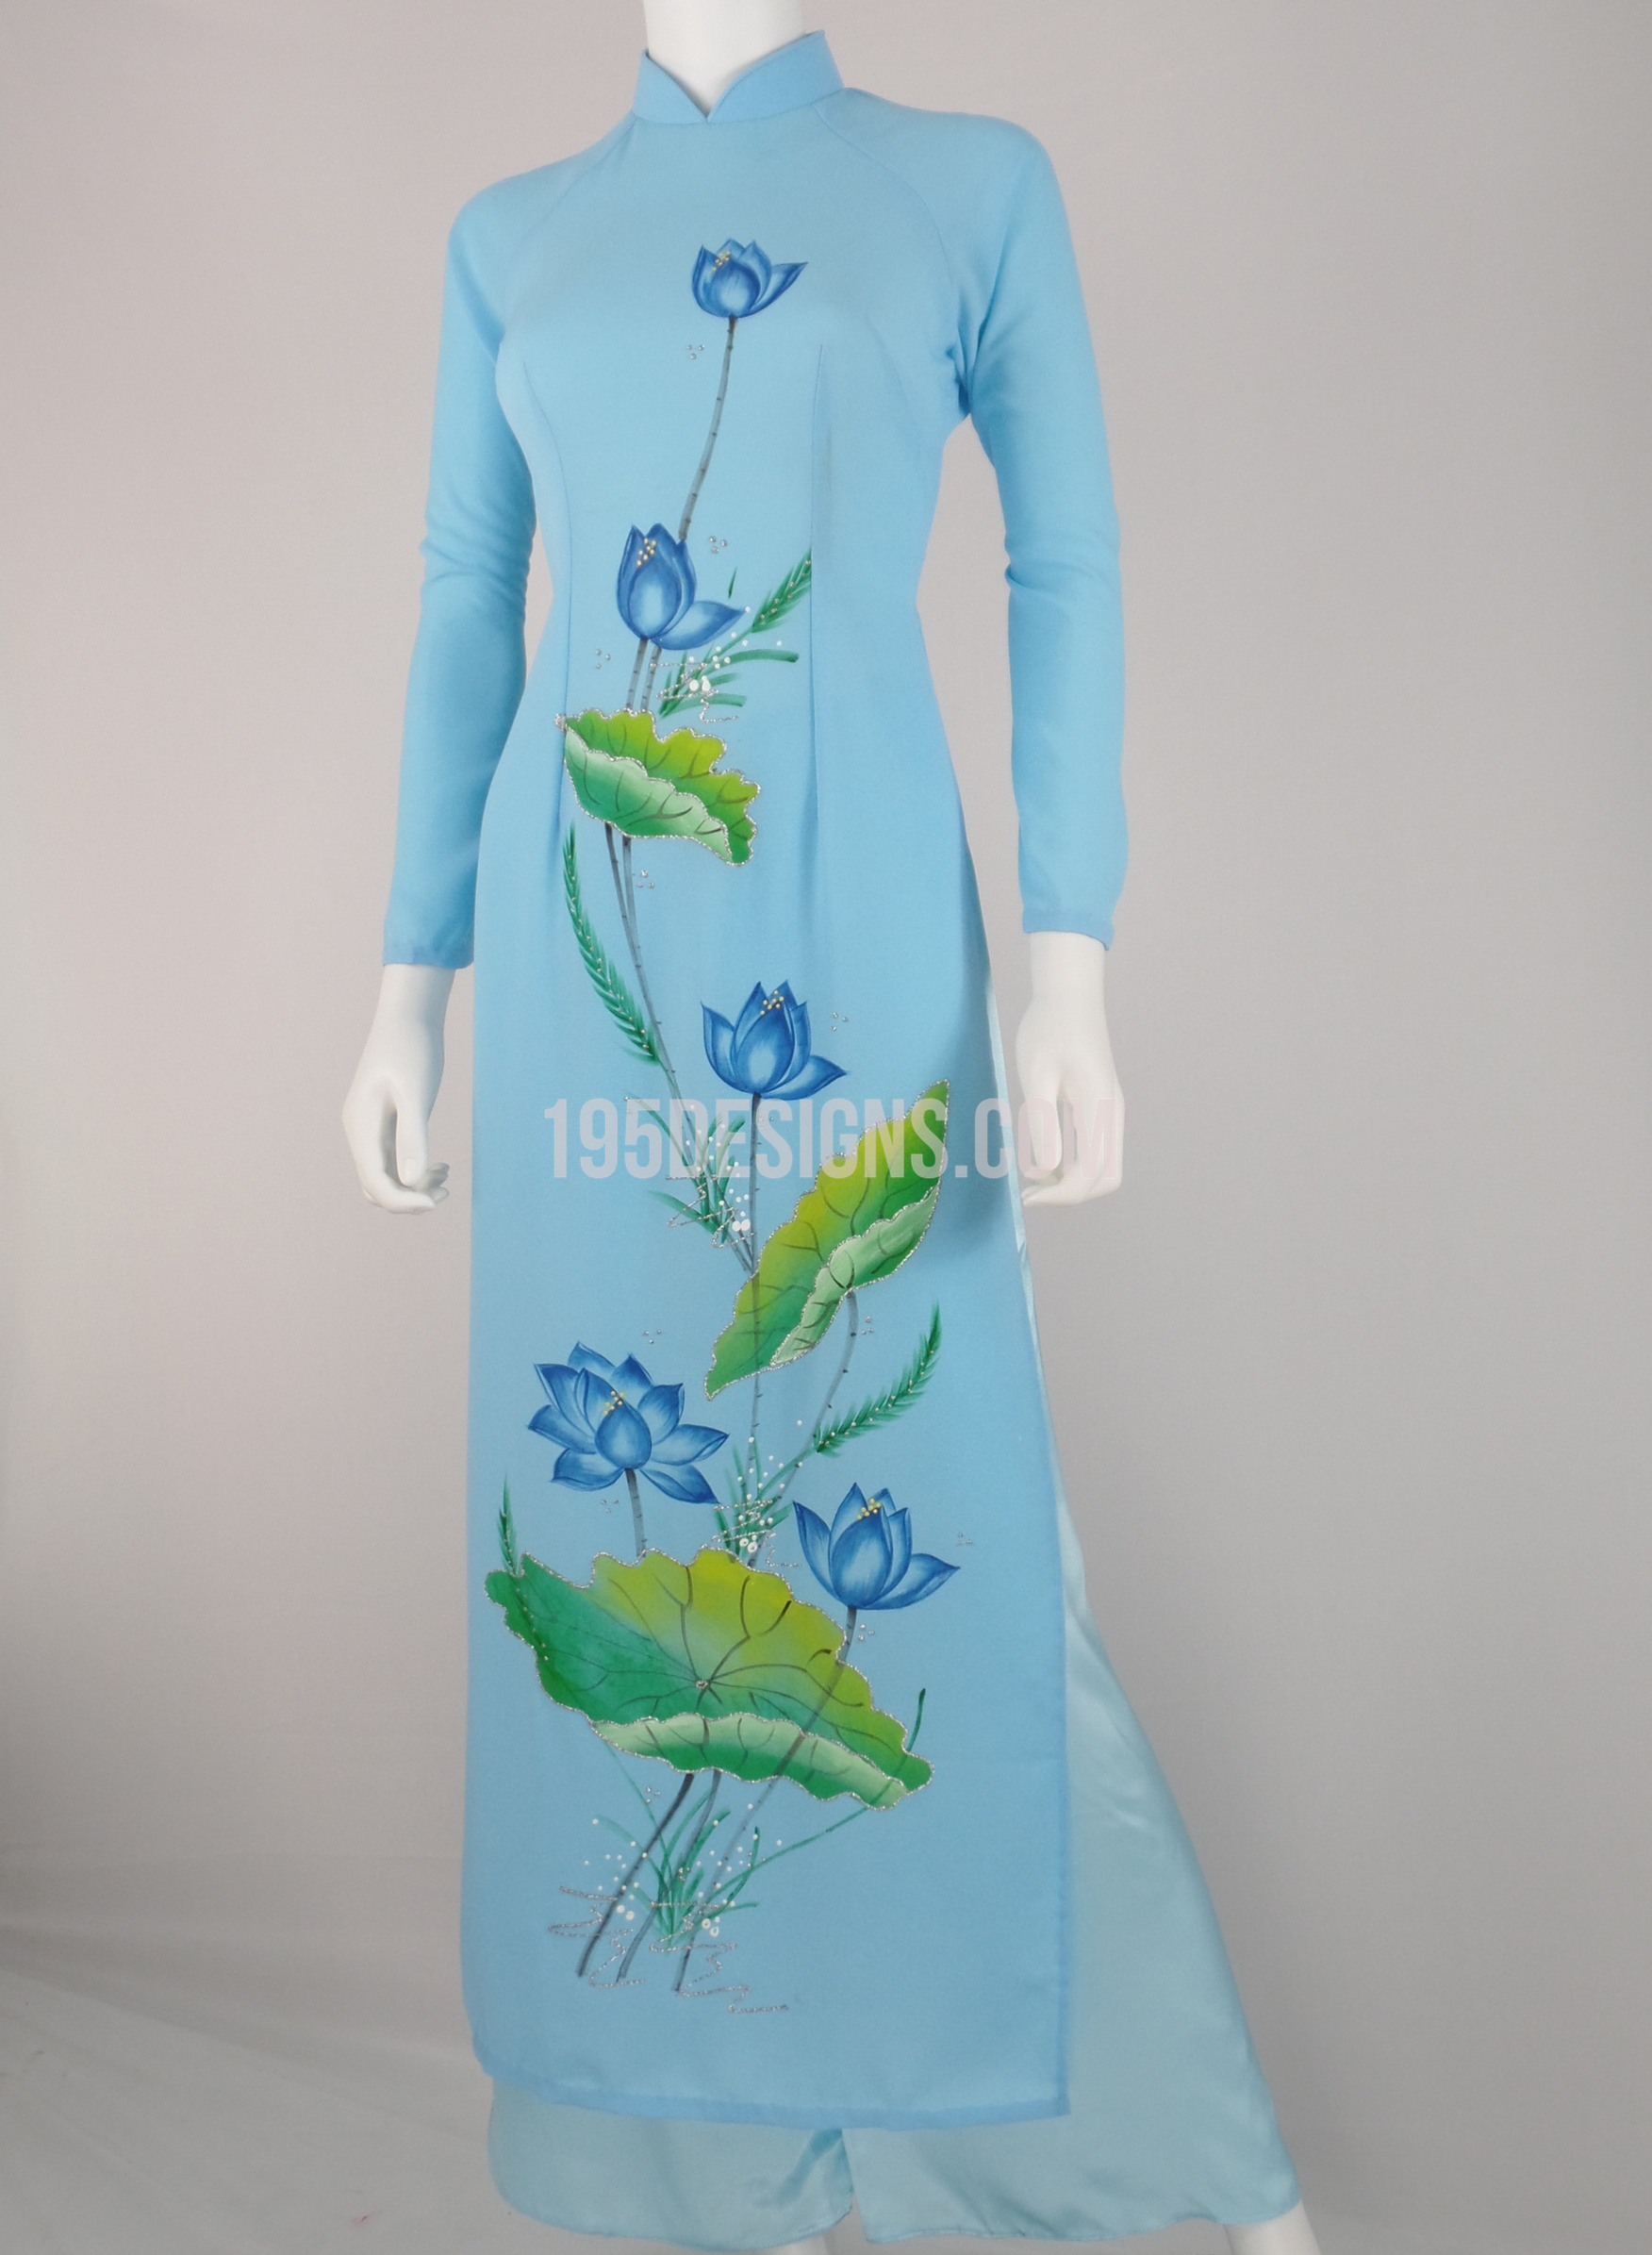 Áo dài hoa sen là sự kết hợp tuyệt vời giữa truyền thống và hiện đại của phụ nữ Việt Nam. Với hoa sen được in trên vải tạo nên vẻ đẹp rực rỡ và sang trọng, chắc chắn khi mặc, bạn sẽ trở nên nữ tính và thanh lịch hơn bao giờ hết.